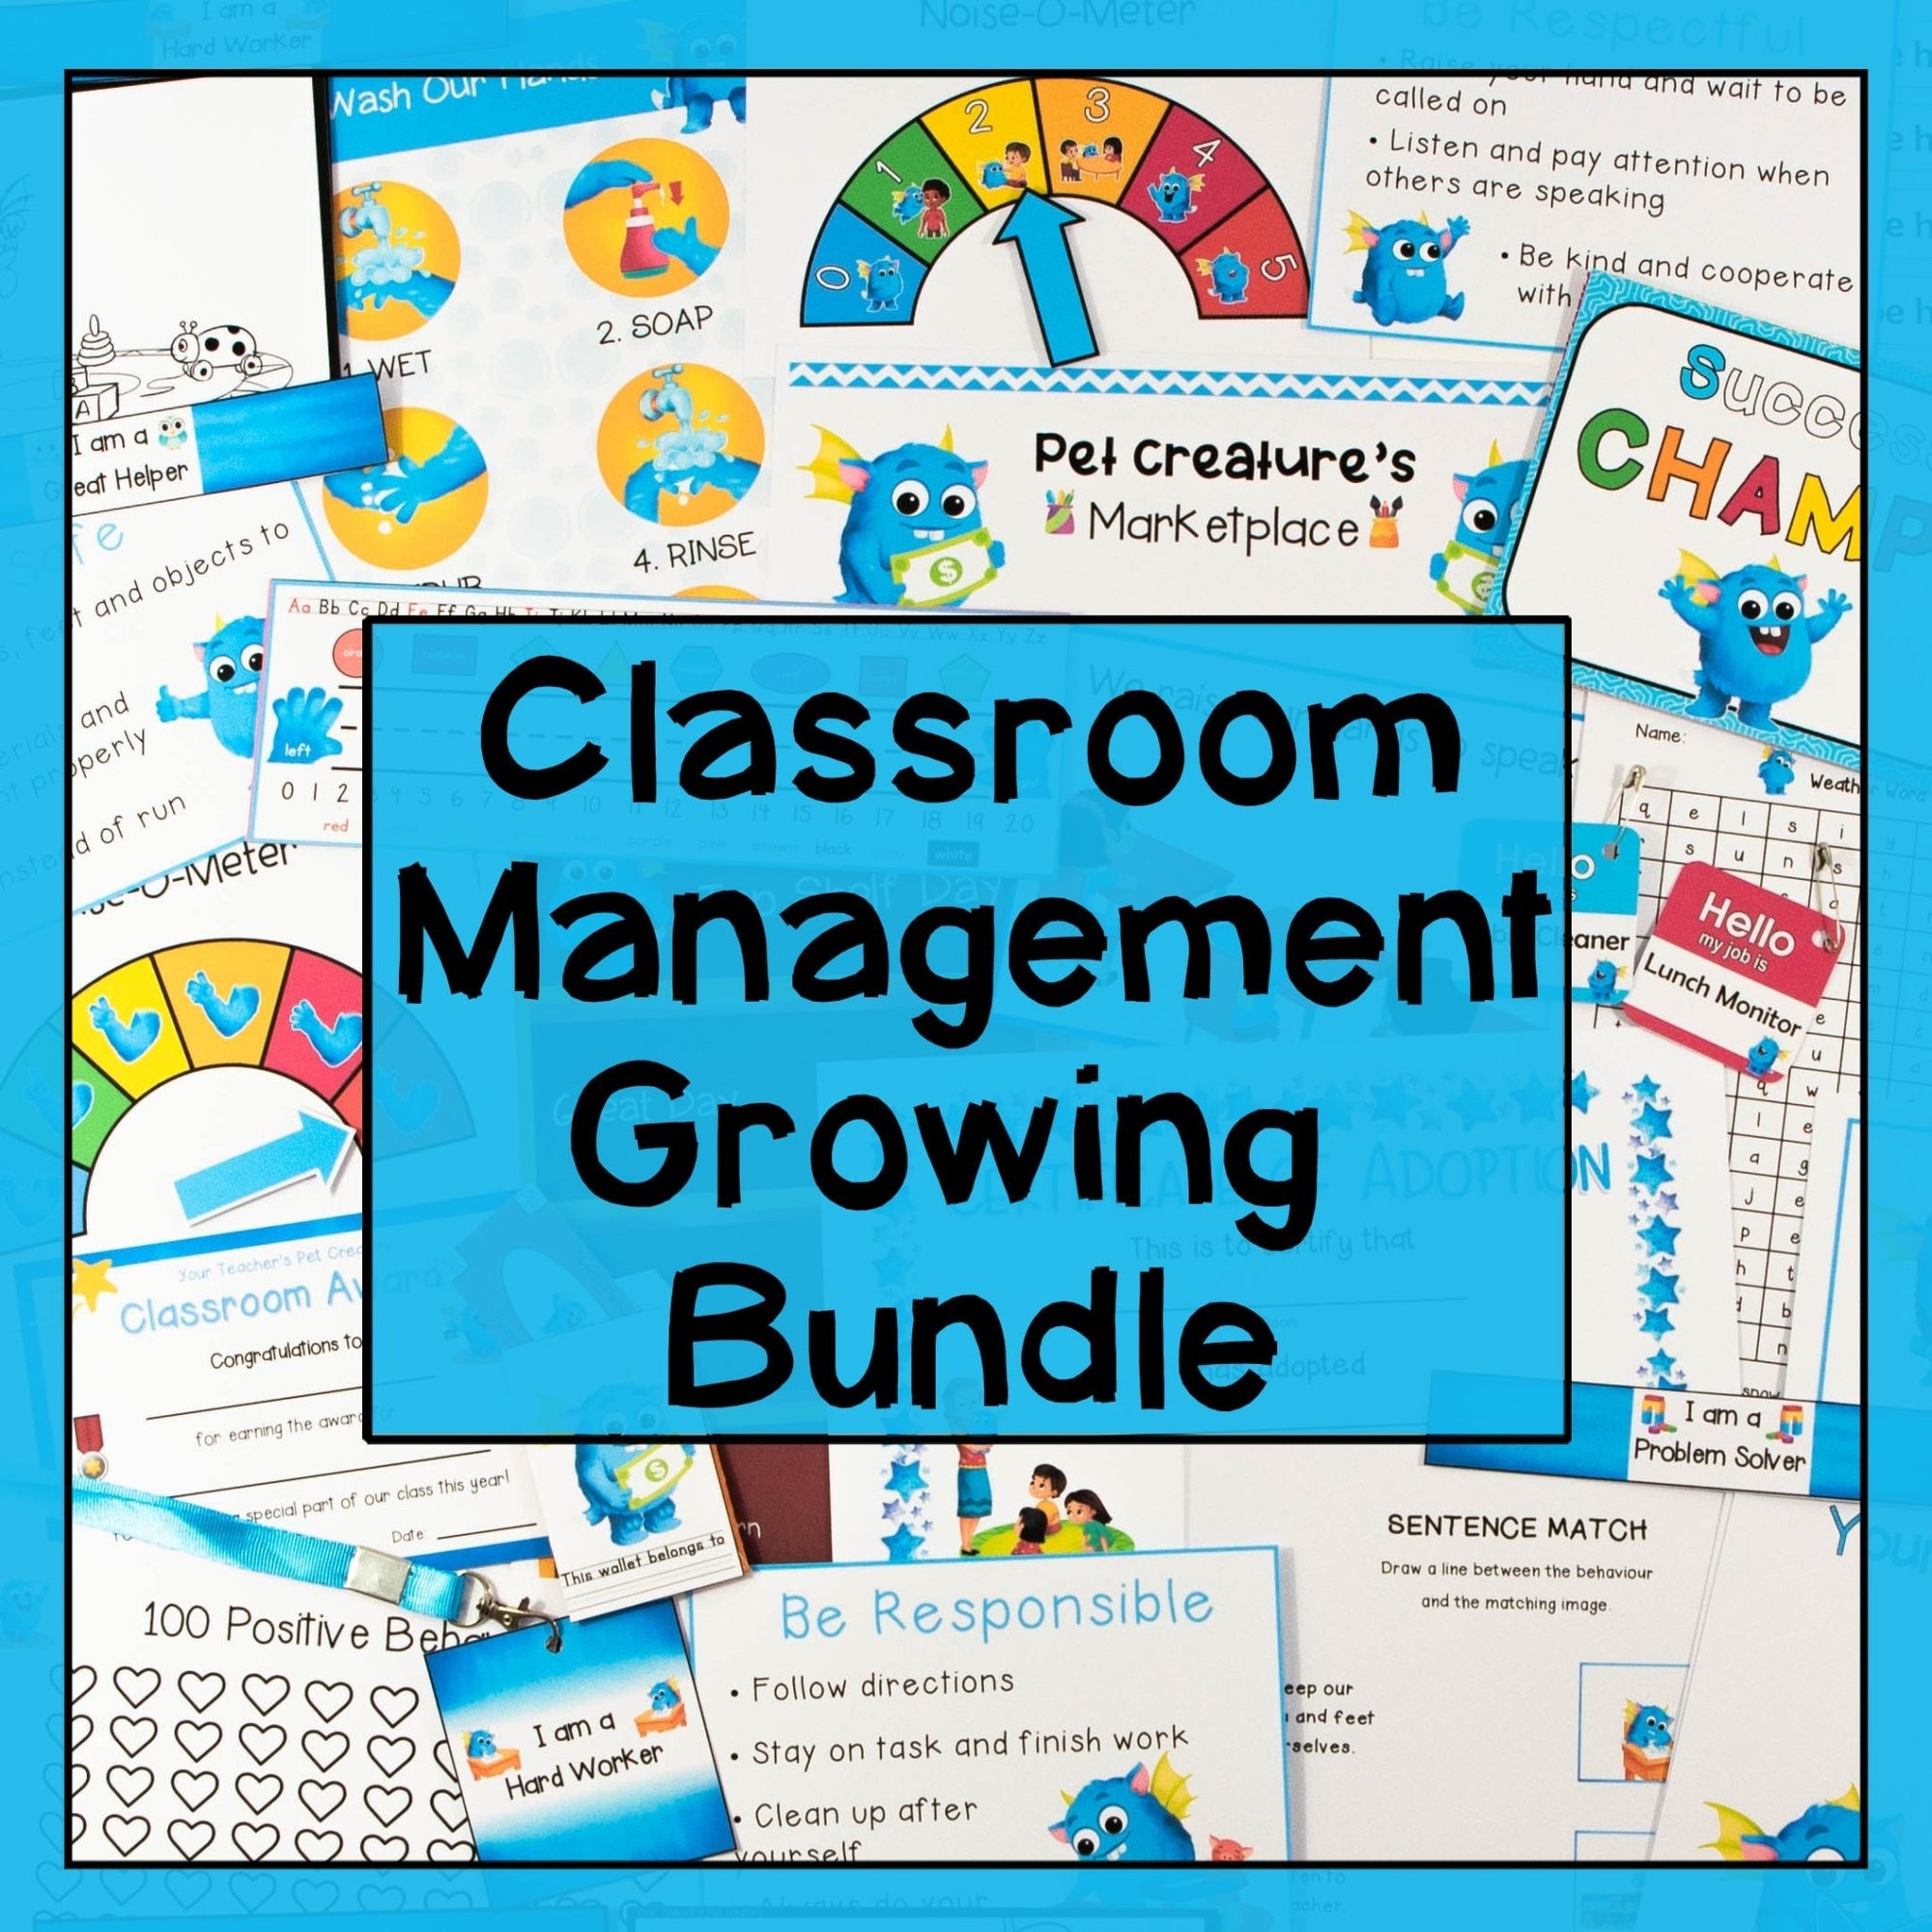 Classroom Management Growing Mega Bundle - Your Teacher's Pet Creature